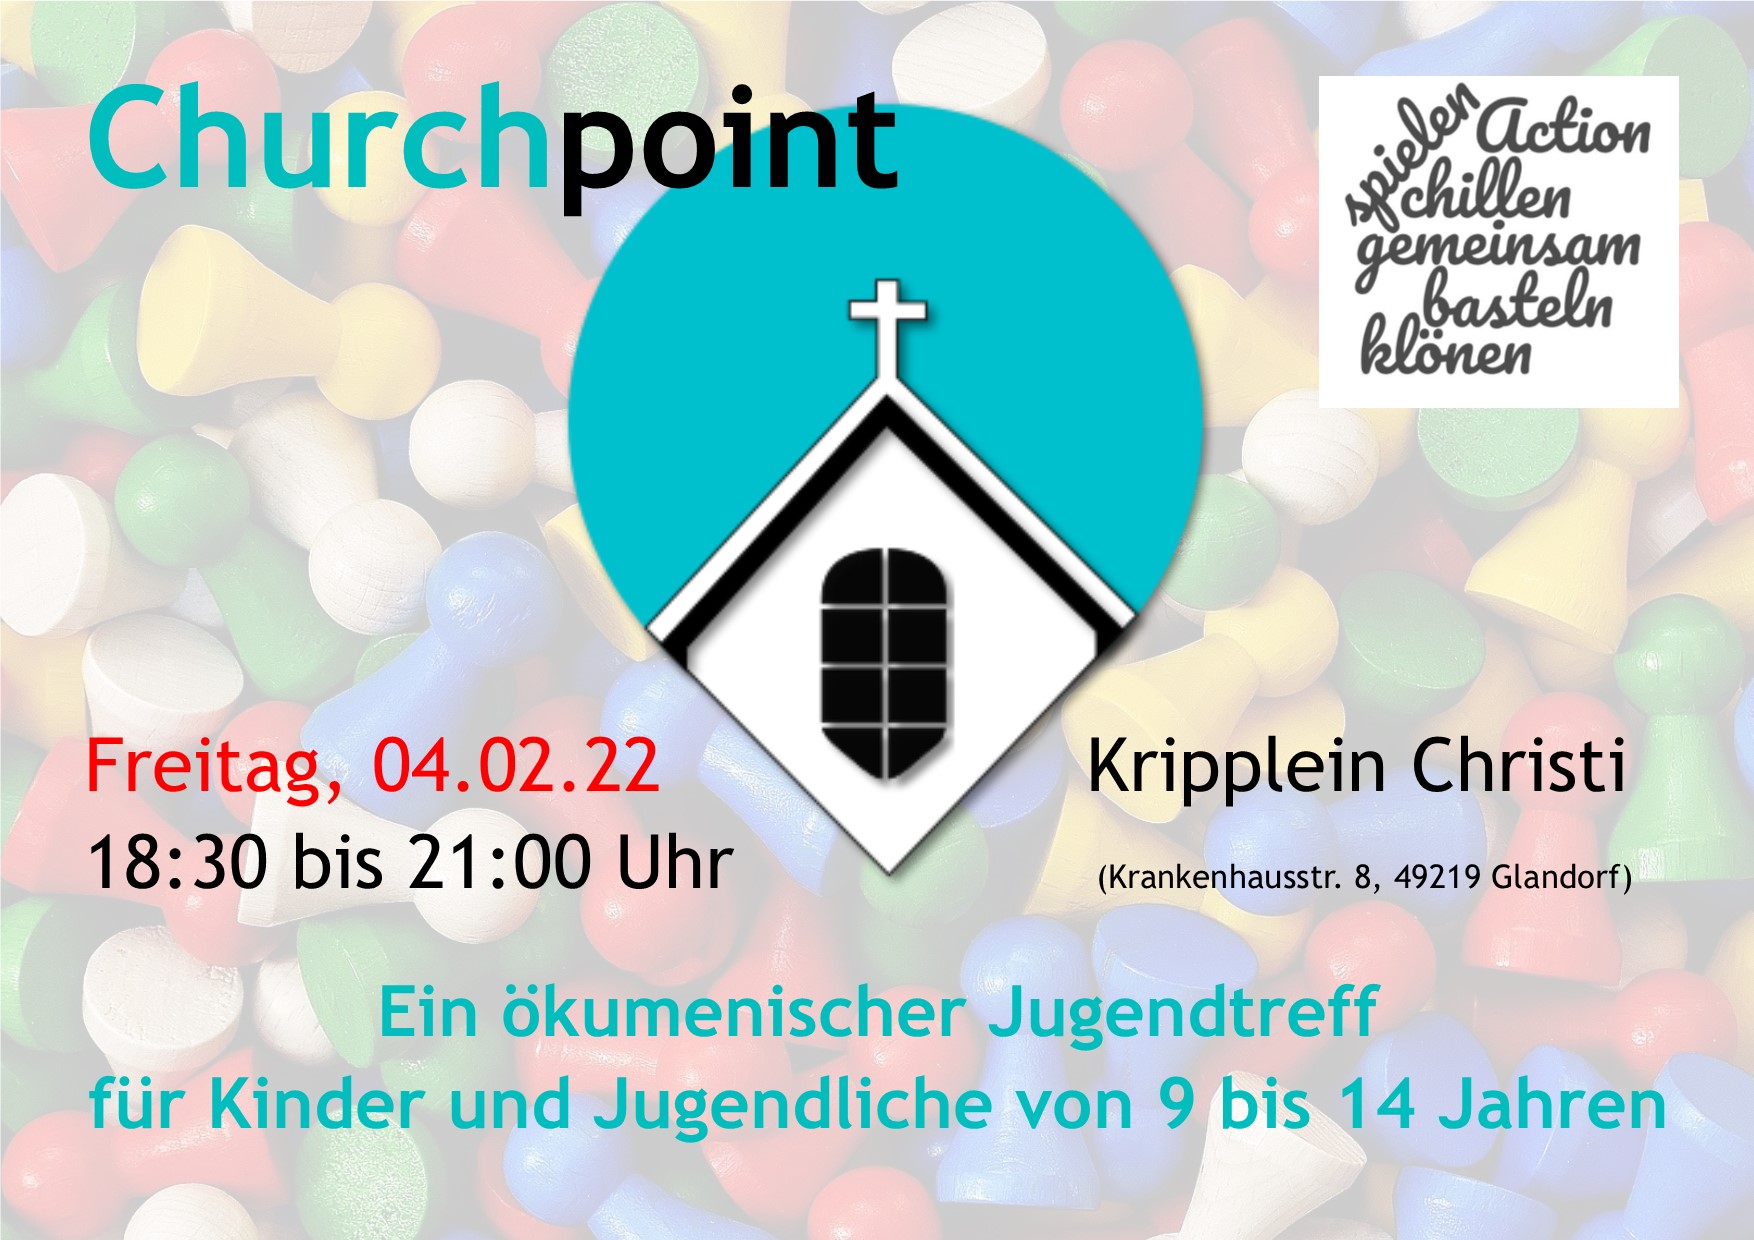 Online-Anmeldung zum nächsten Churchpoint